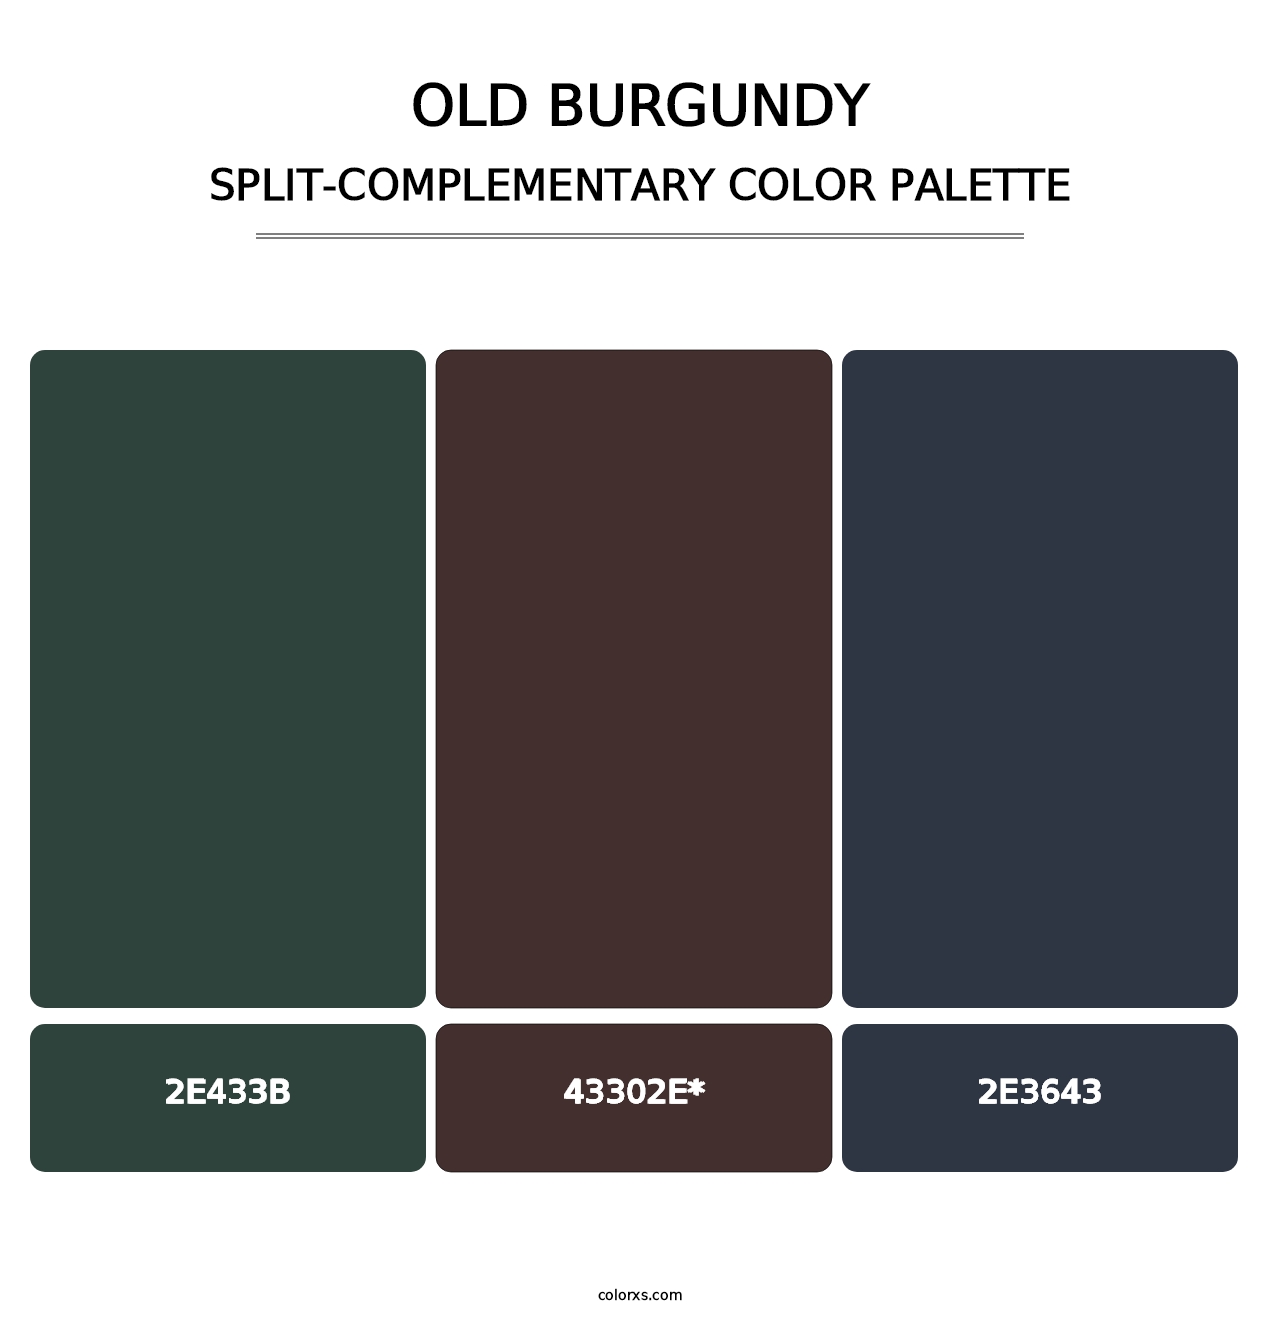 Old Burgundy - Split-Complementary Color Palette